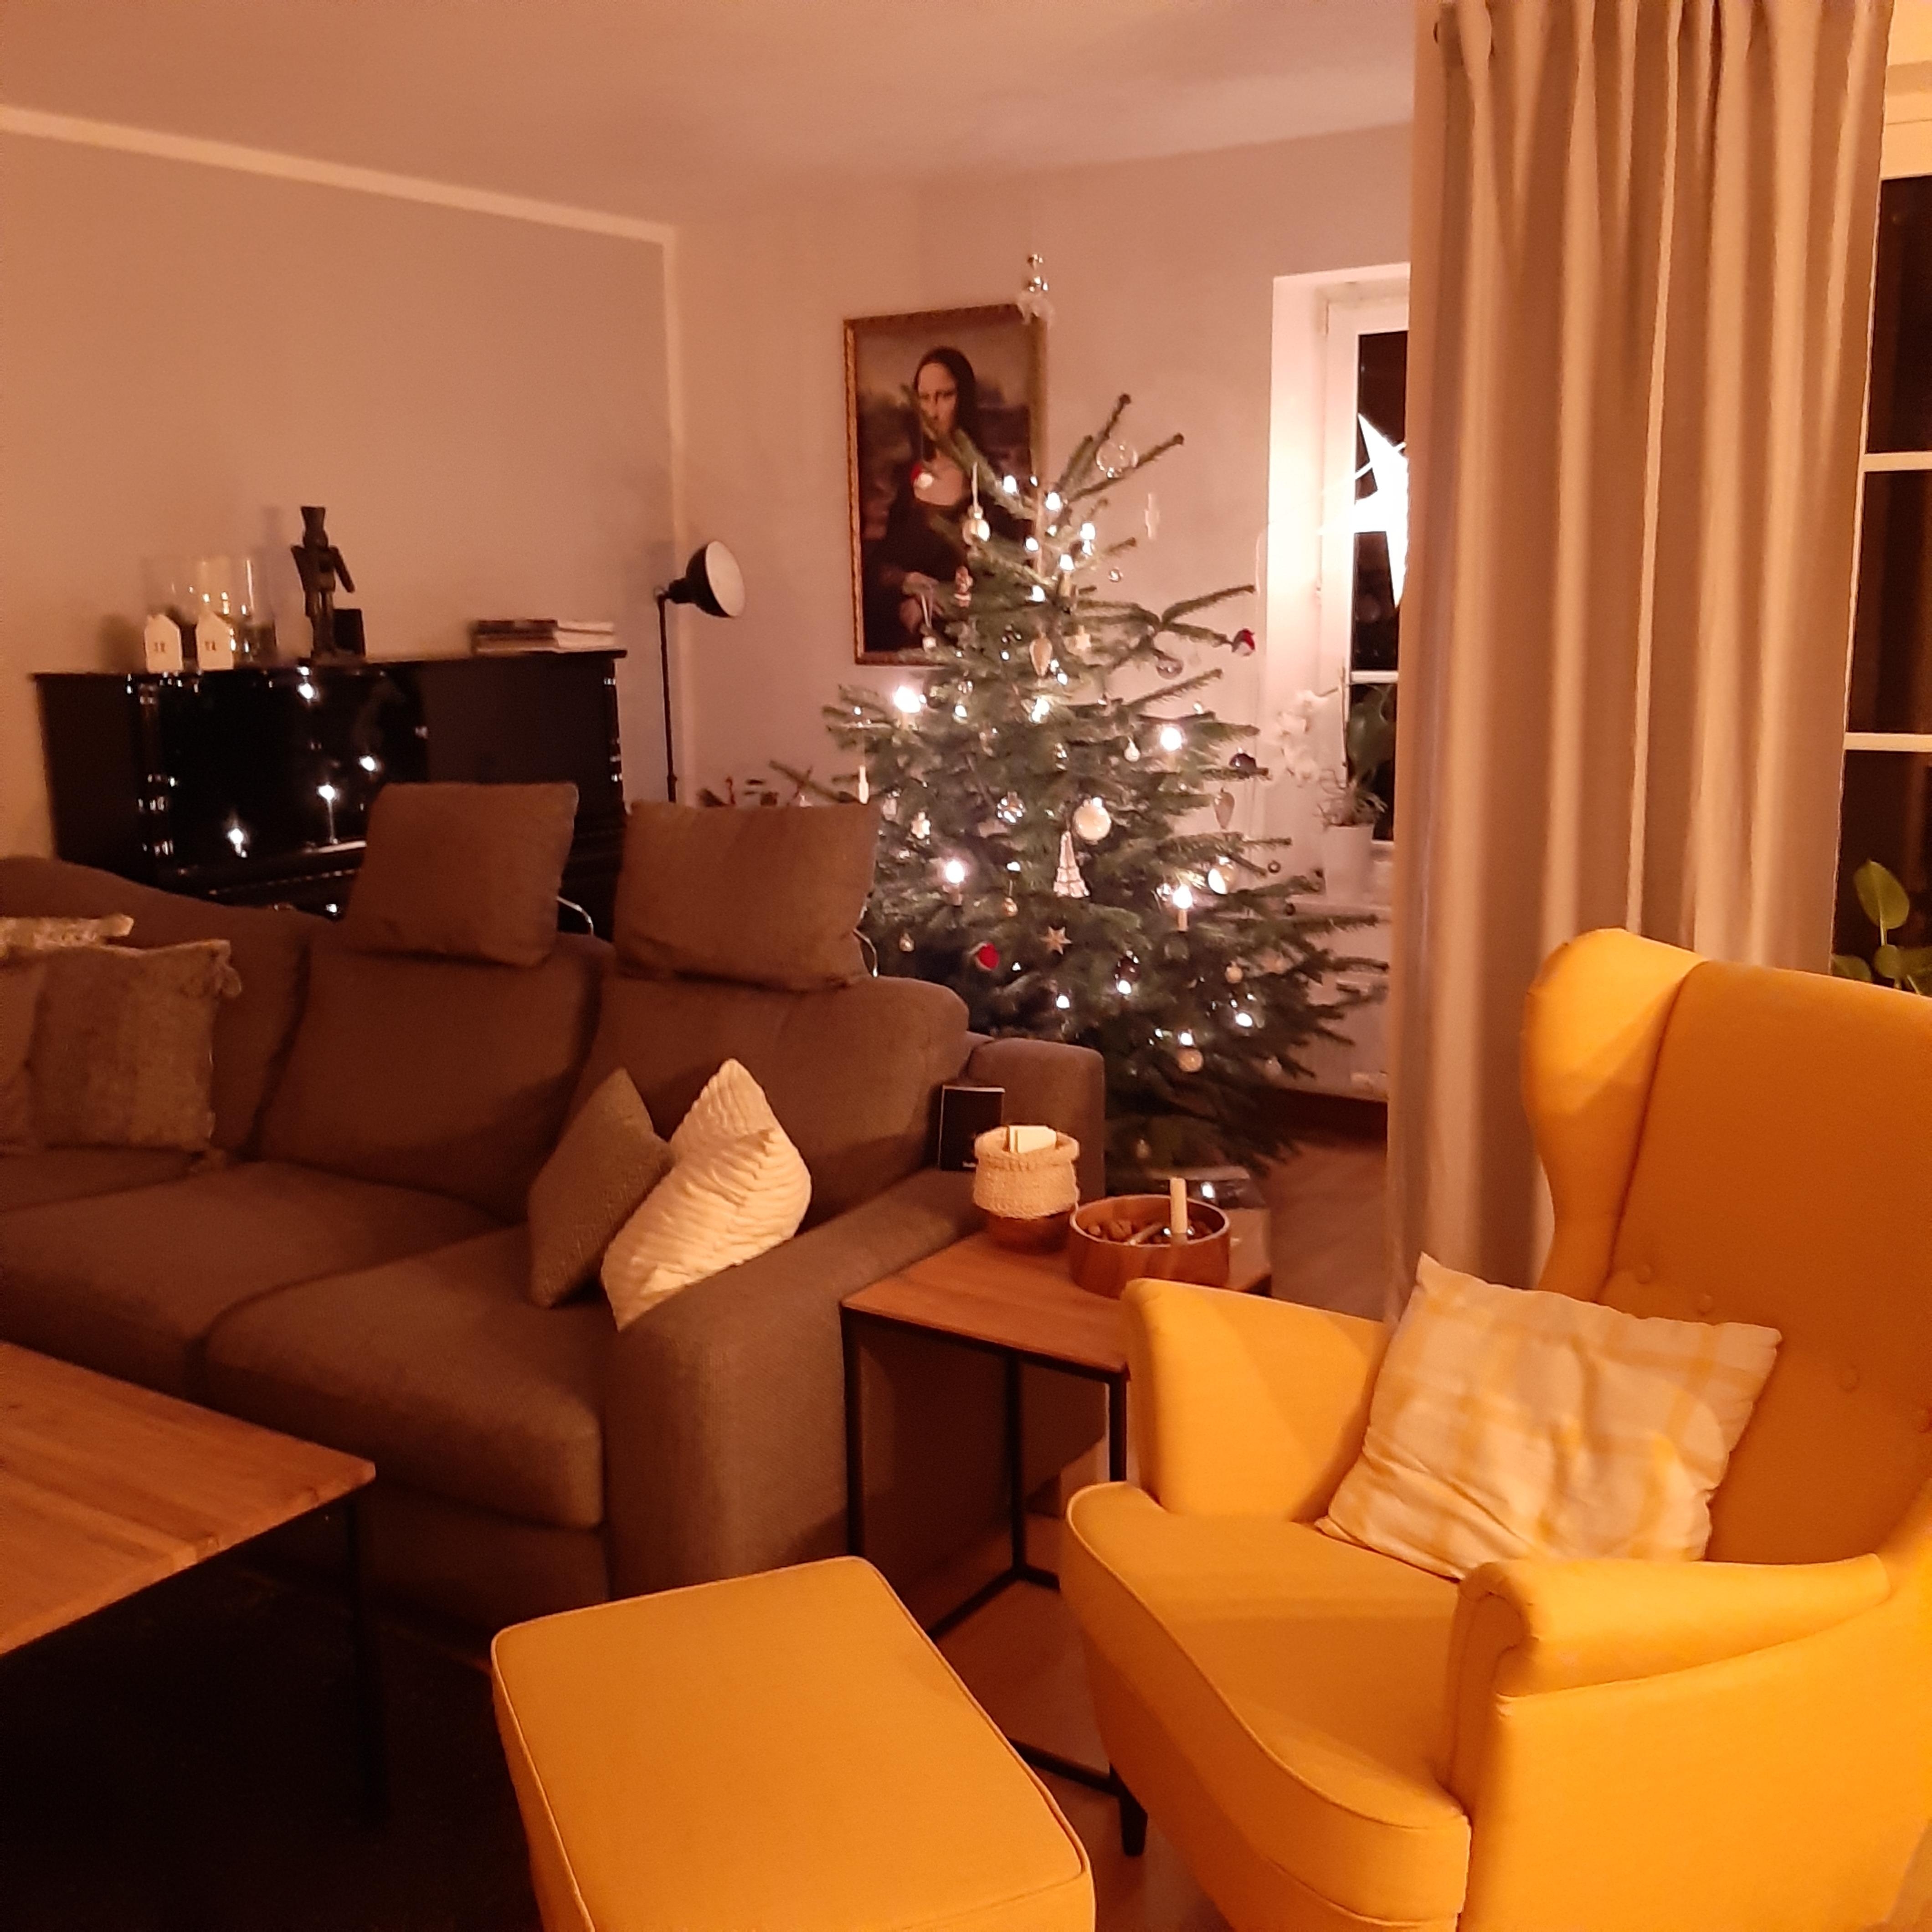 Fröhliche Weihnachten! #froheweihnachten #ohrensessel #tannenbaum #wohnzimmer